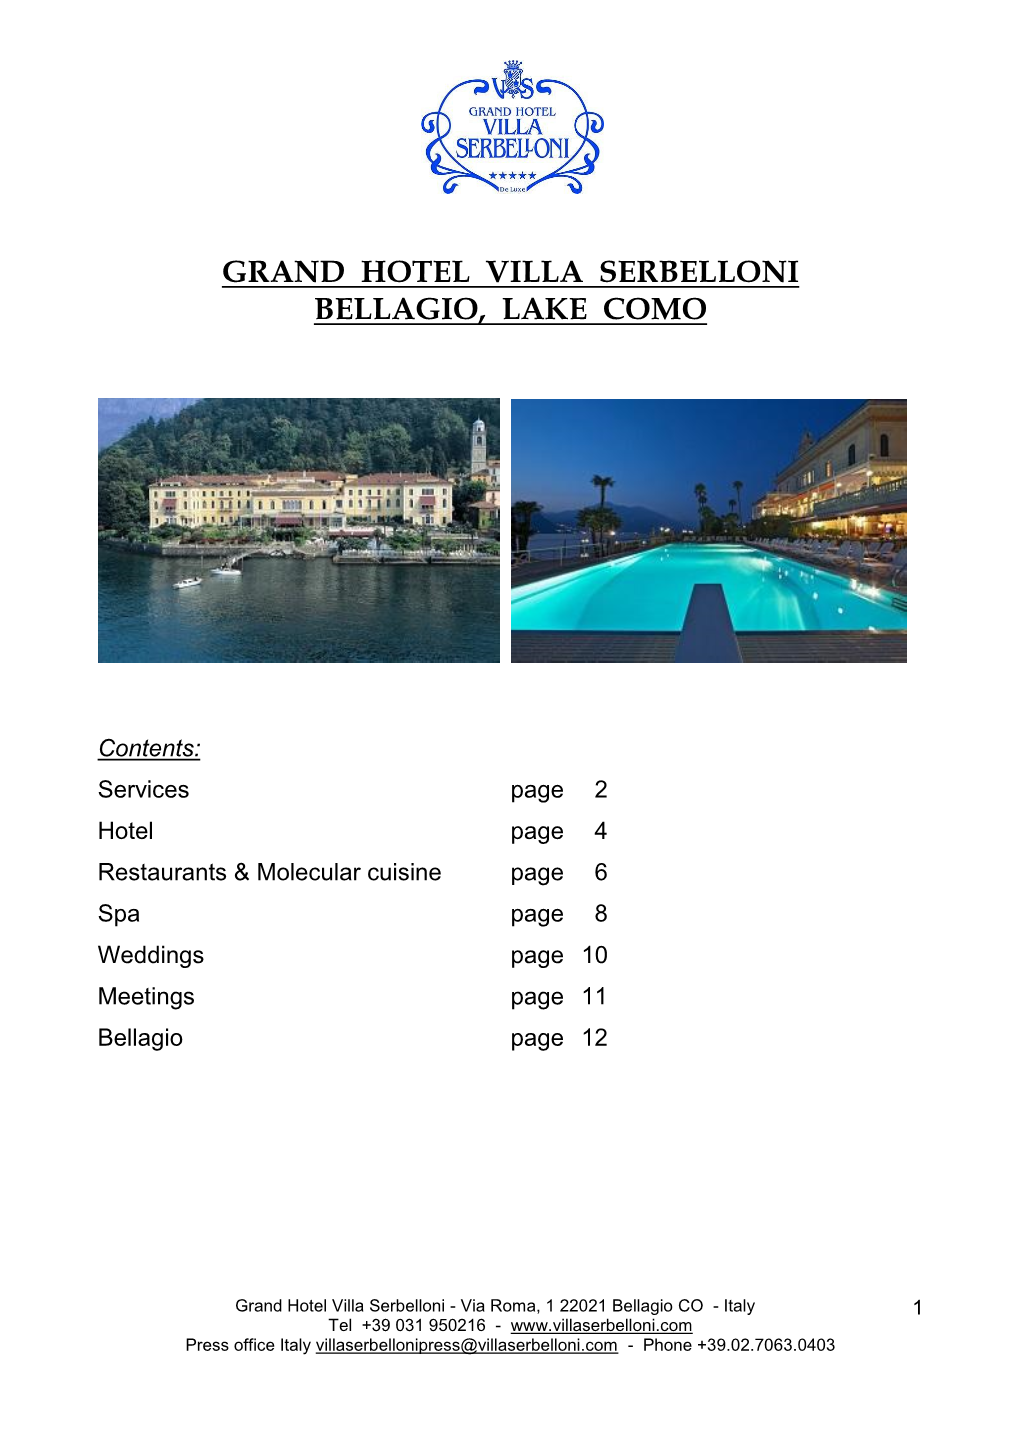 Grand Hotel Villa Serbelloni Bellagio, Lake Como